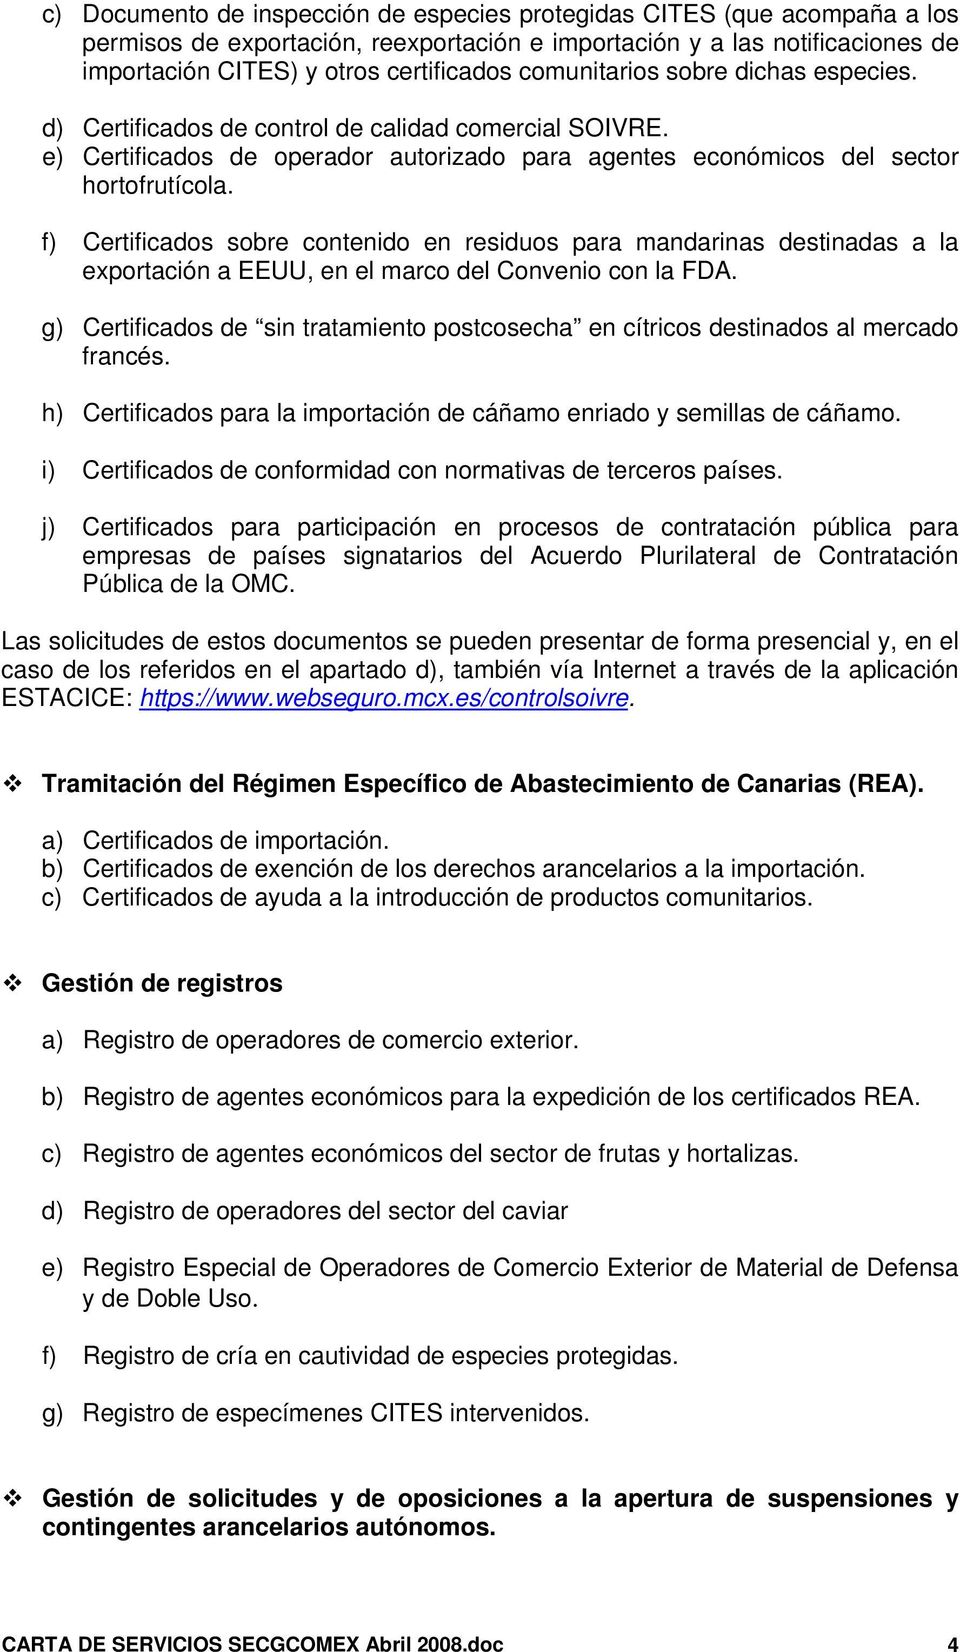 f) Certificados sobre contenido en residuos para mandarinas destinadas a la exportación a EEUU, en el marco del Convenio con la FDA.